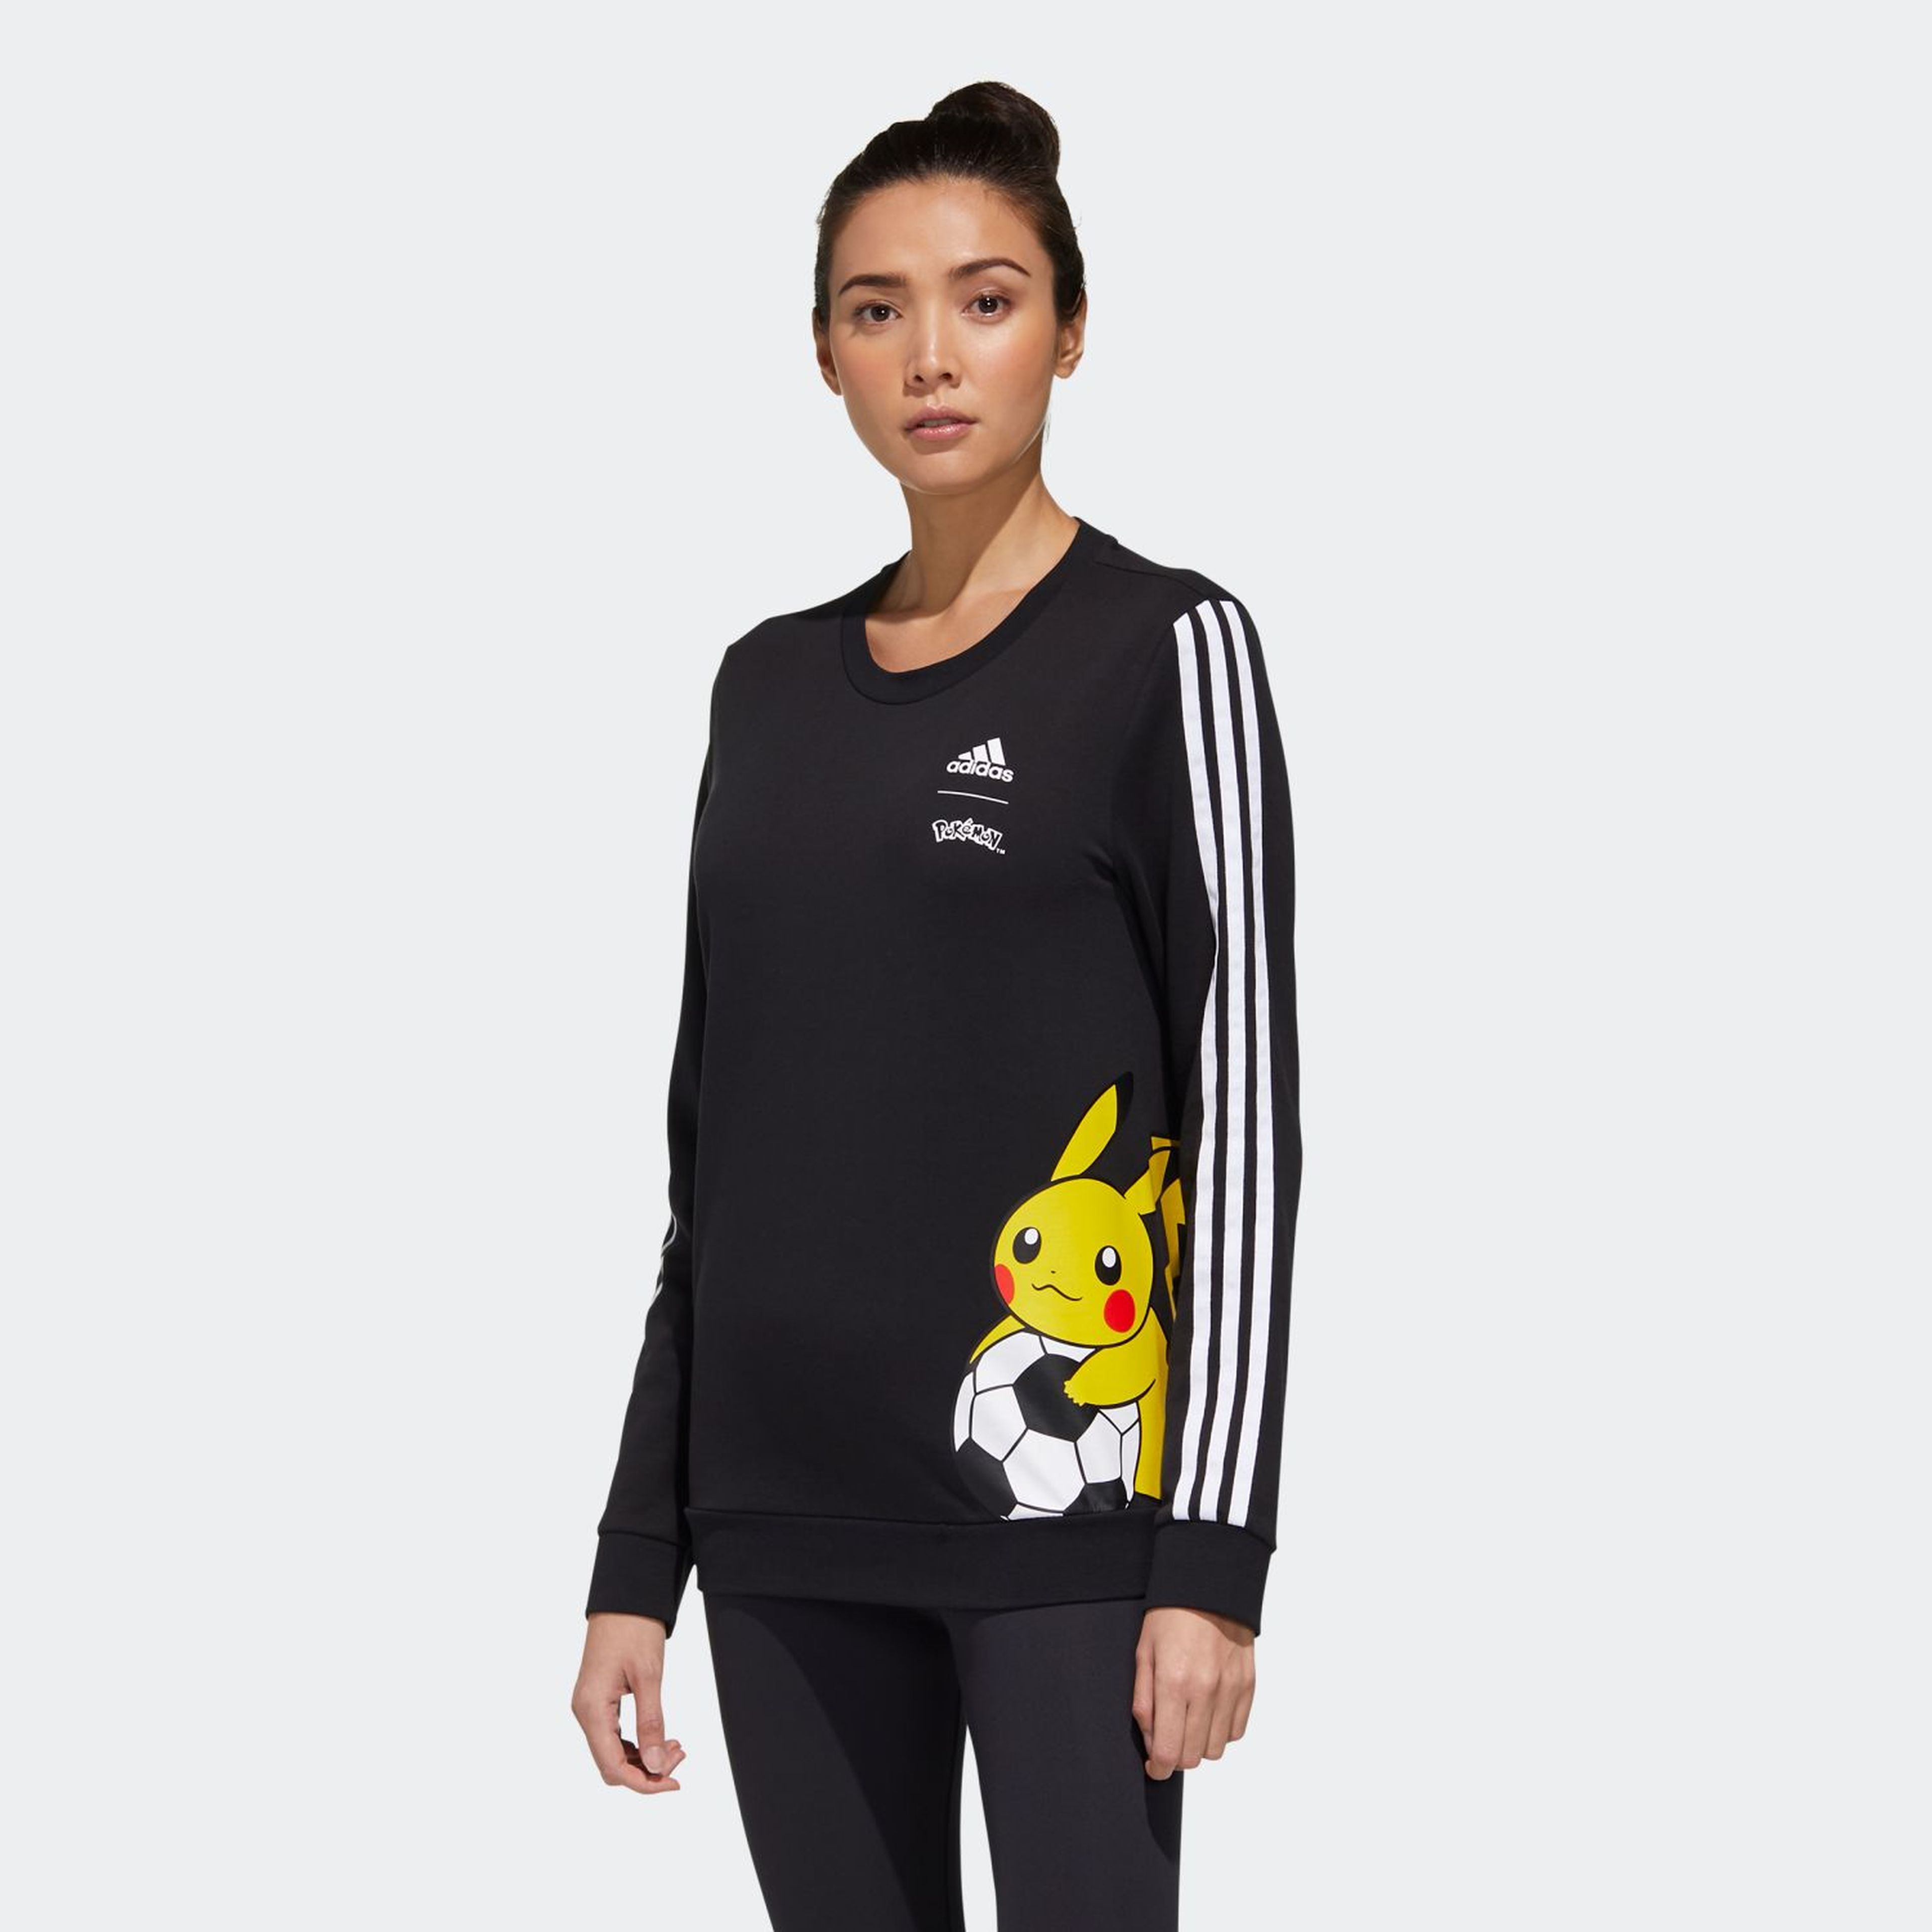 Adidas x Pokémon